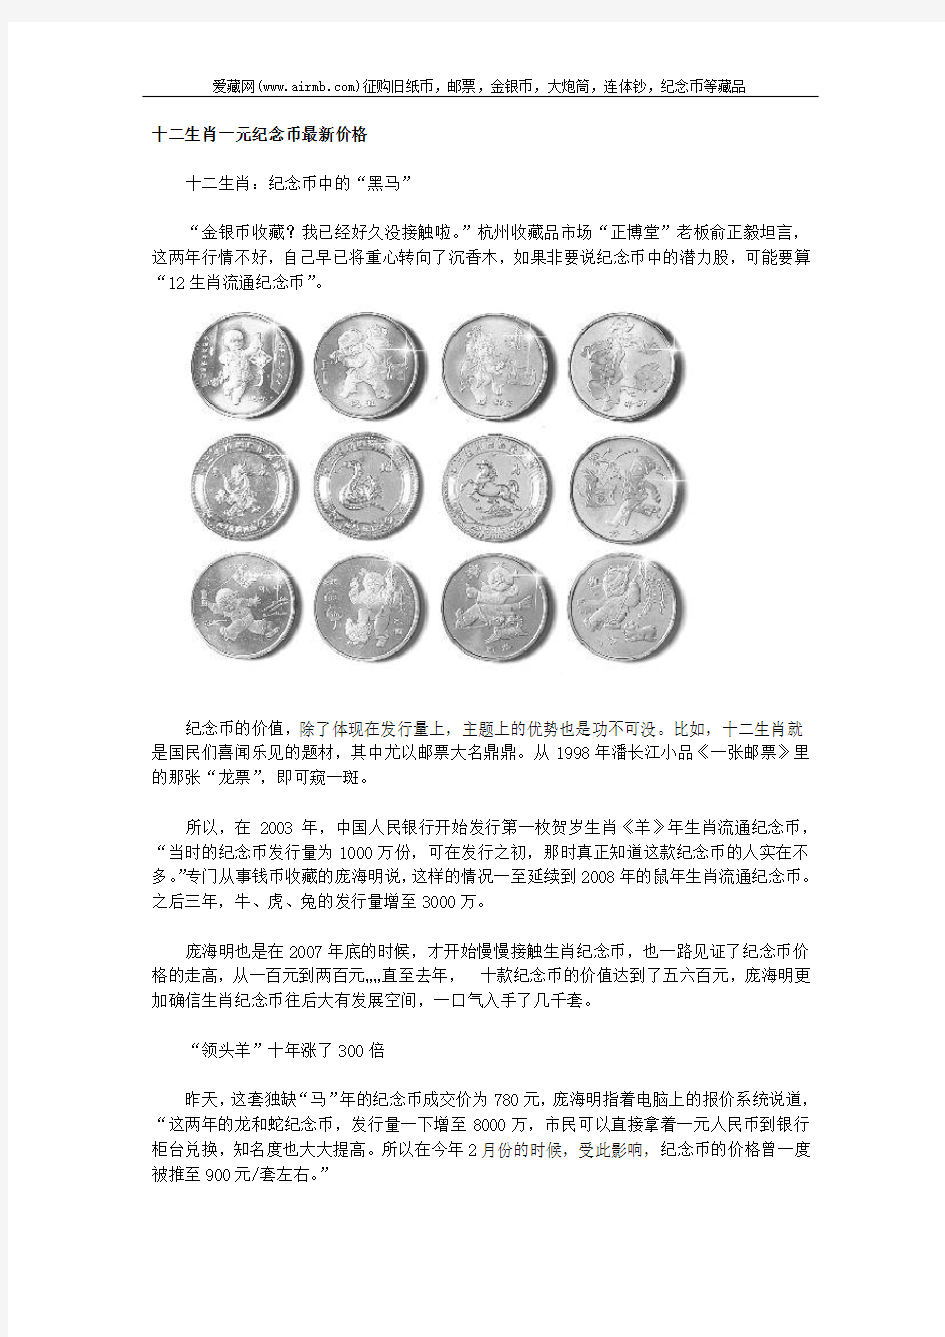 十二生肖一元纪念币最新价格